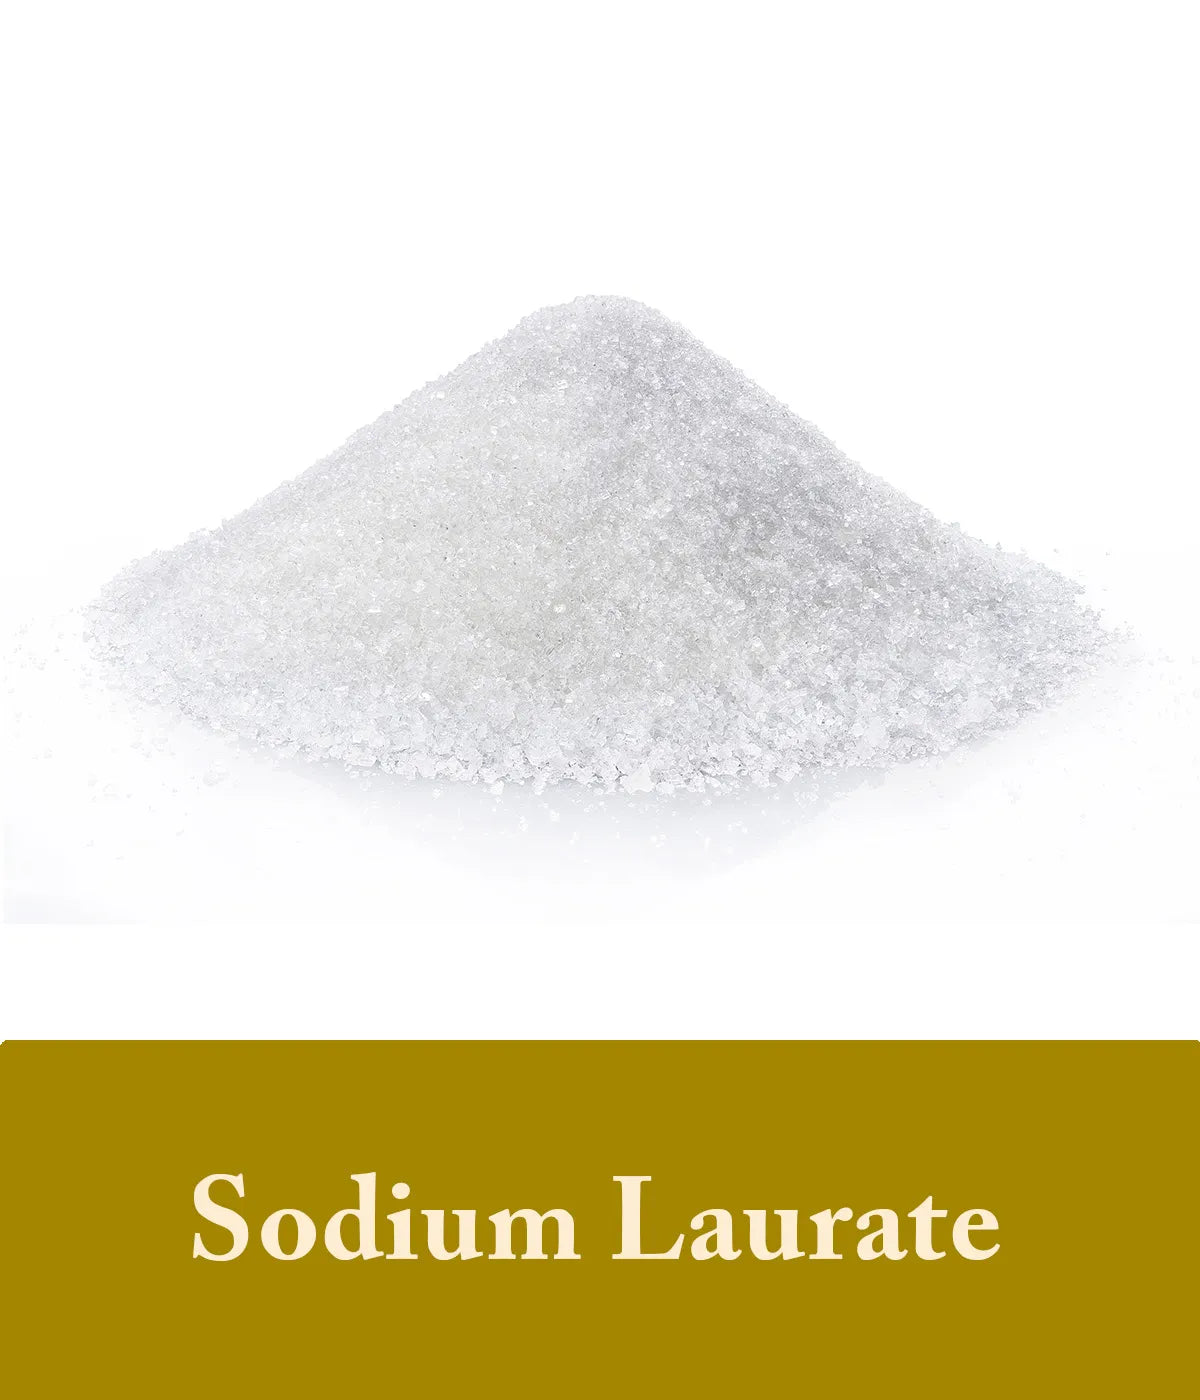 Sodium Laurate Turmeric Ingredient